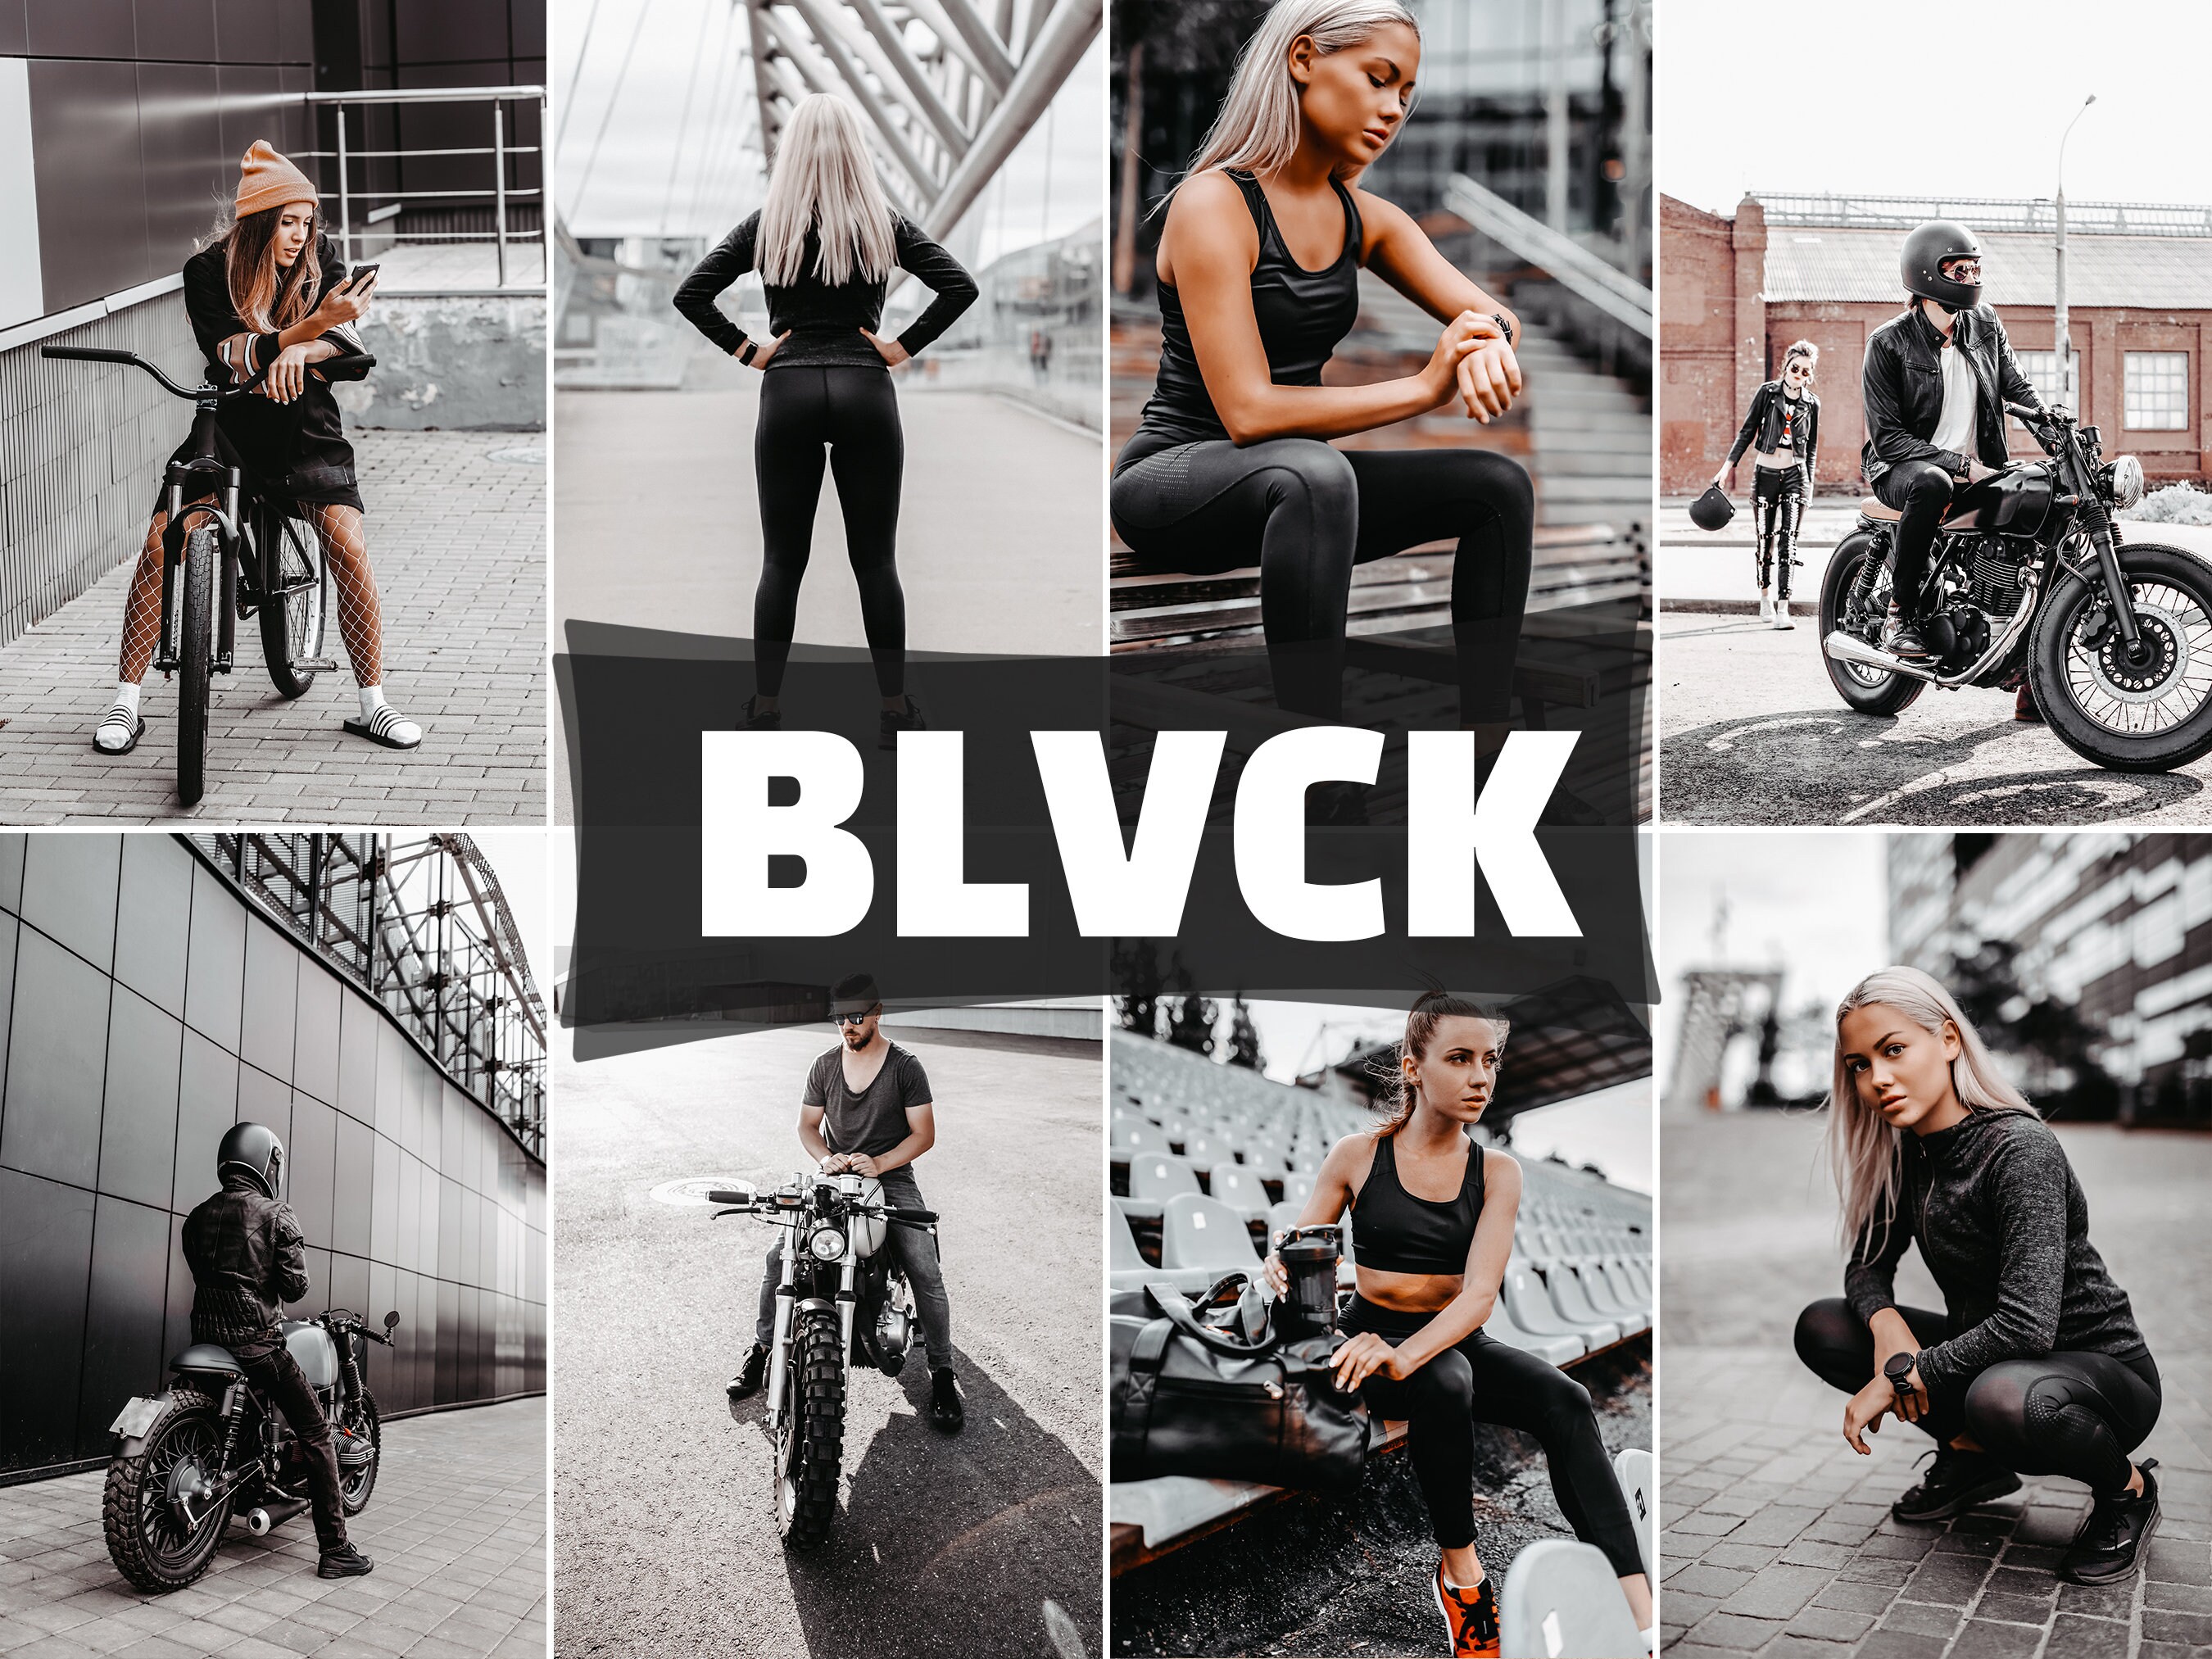 Exclusive Black Jersey | Blvck Paris L / Black